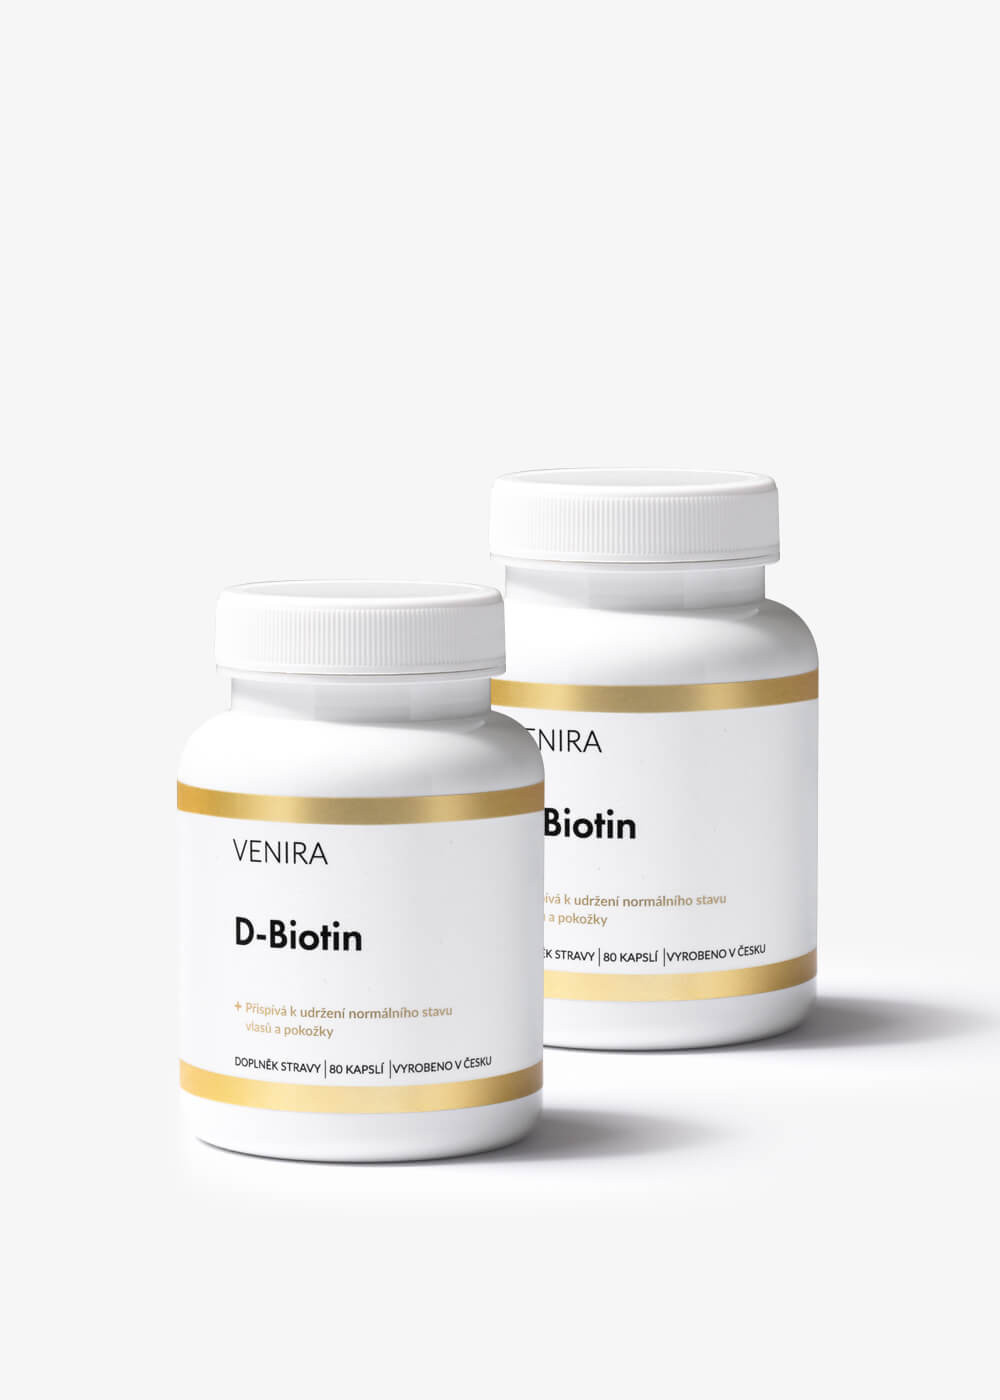 VENIRA d-biotin, 2 balení za výhodnější cenu, 160 kapslí